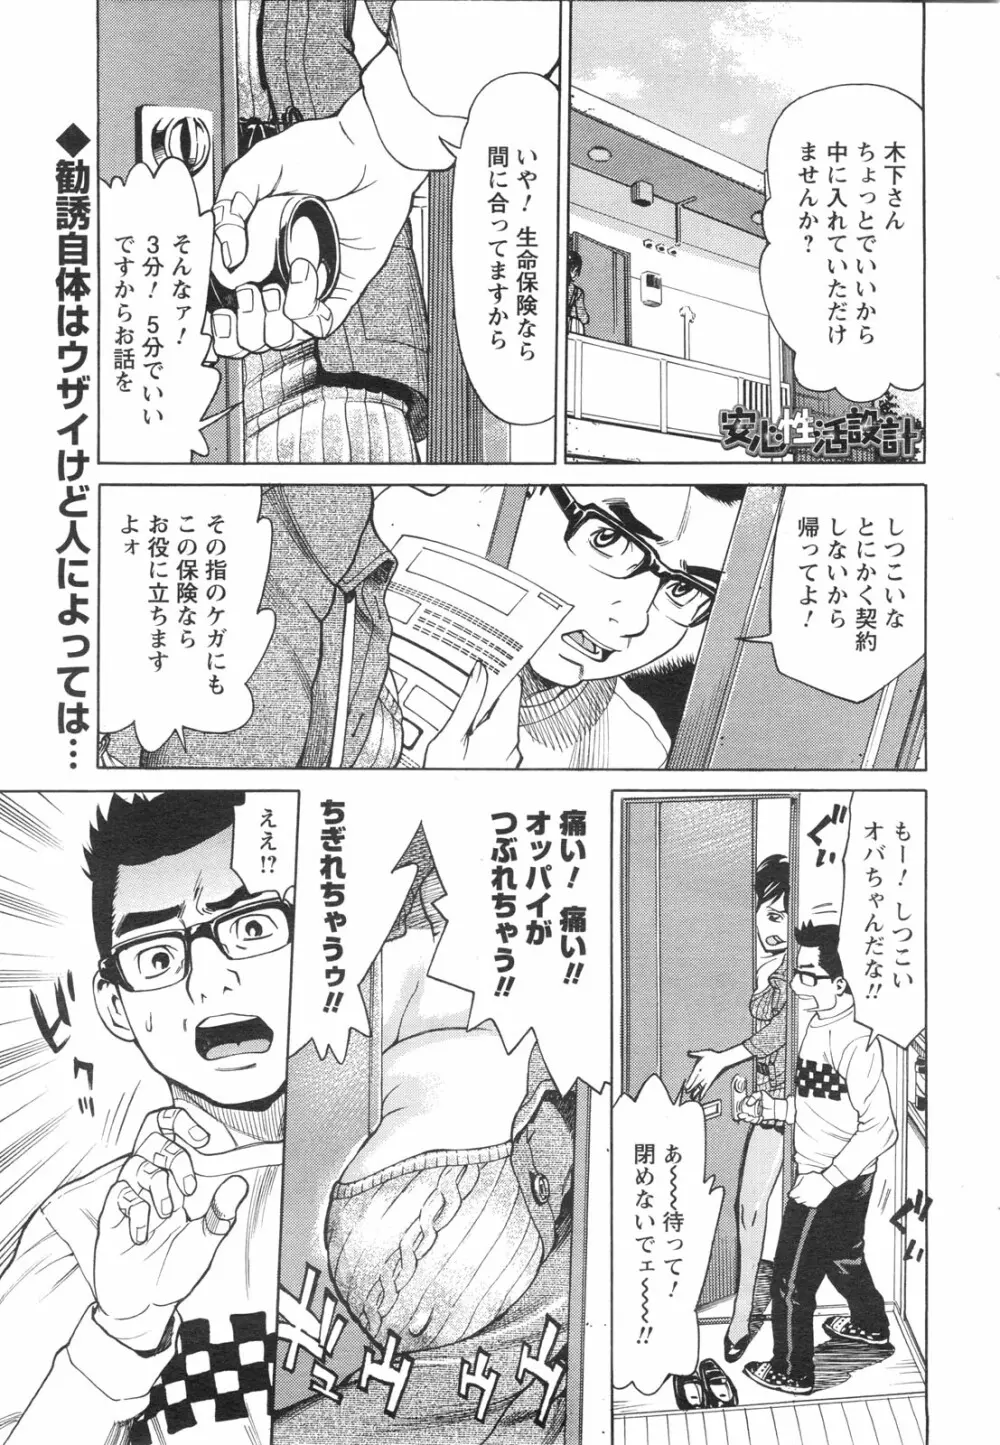 メンズヤングスペシャルIKAZUCHI雷 Vol.13 2010年3月号増刊 52ページ